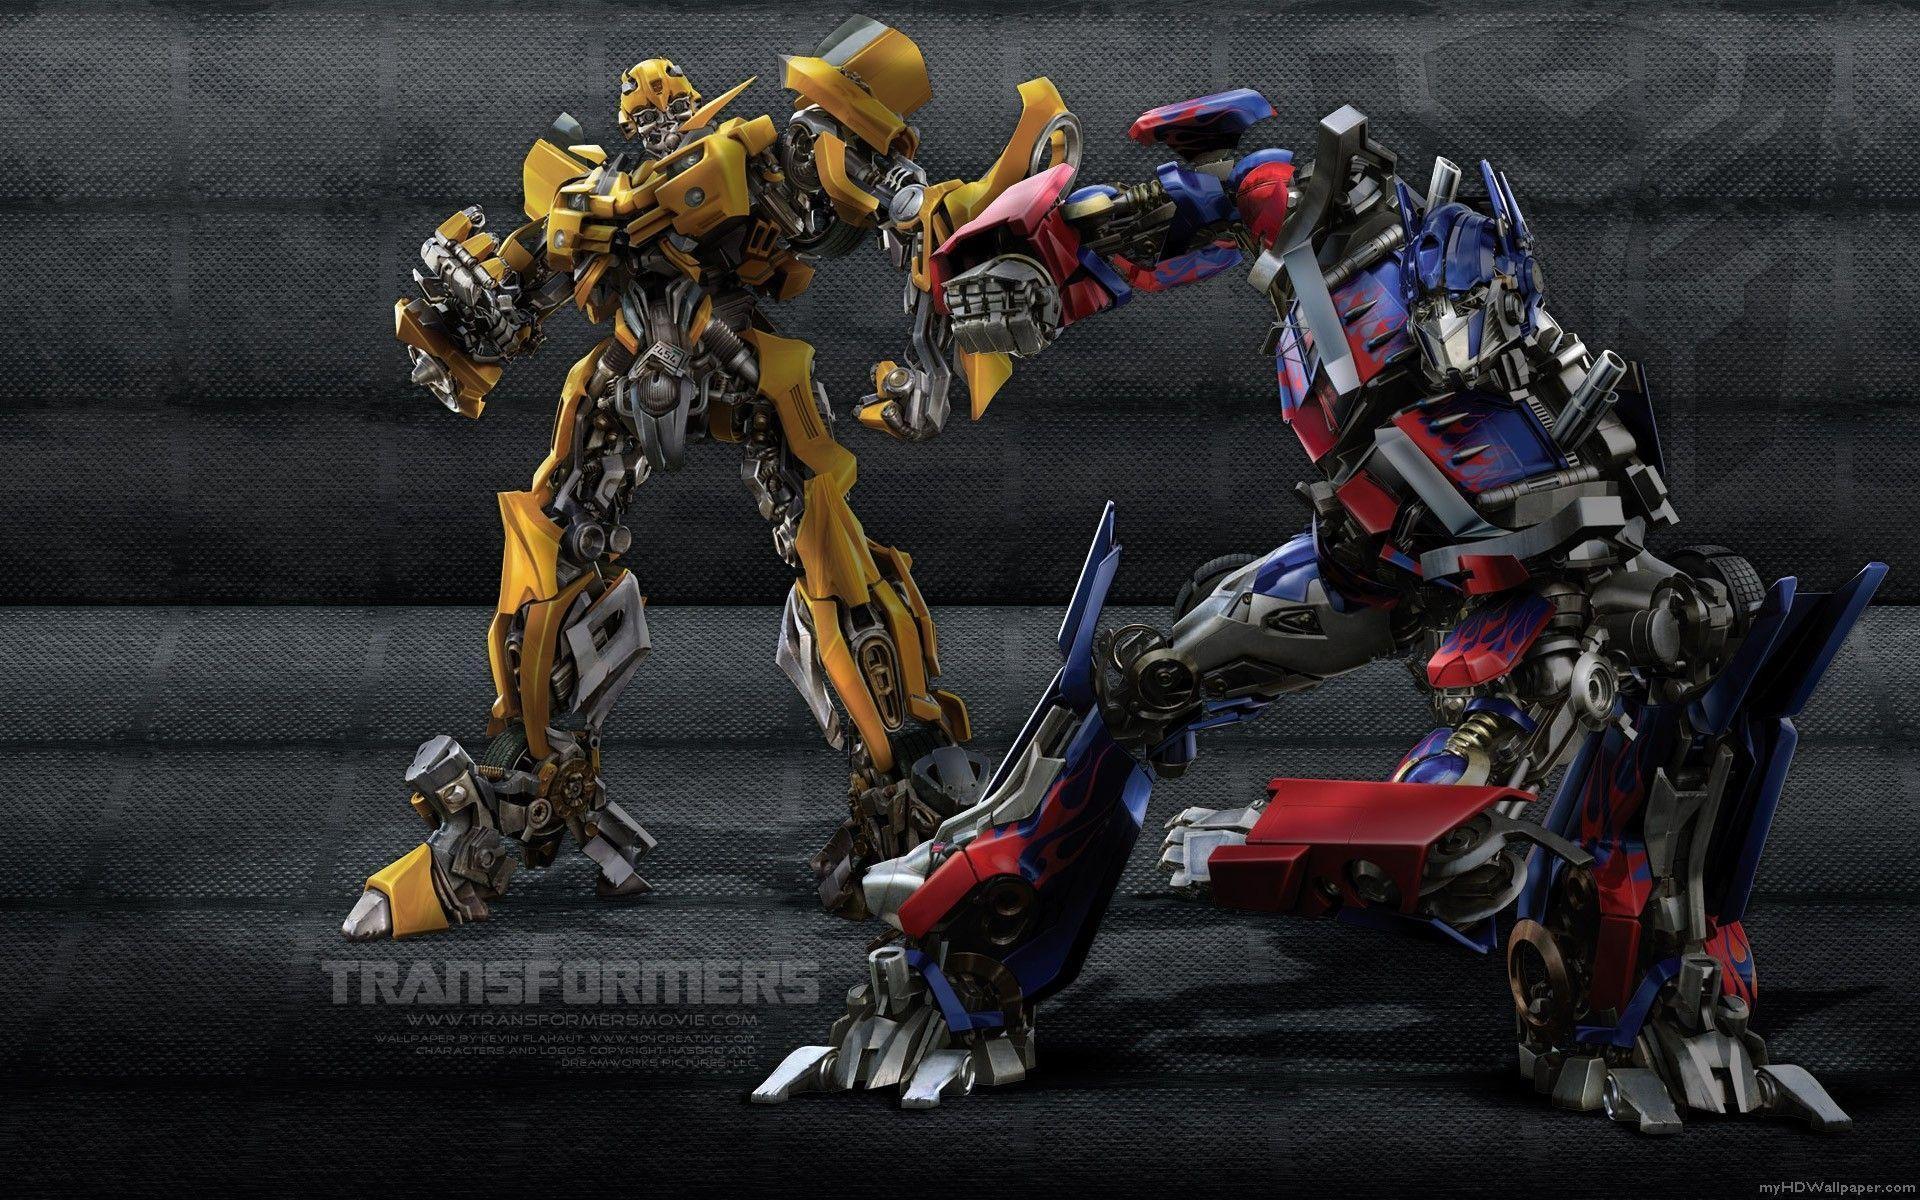 Transformers Wallpaper HD Robot Wallpaper. awshdwallpaper